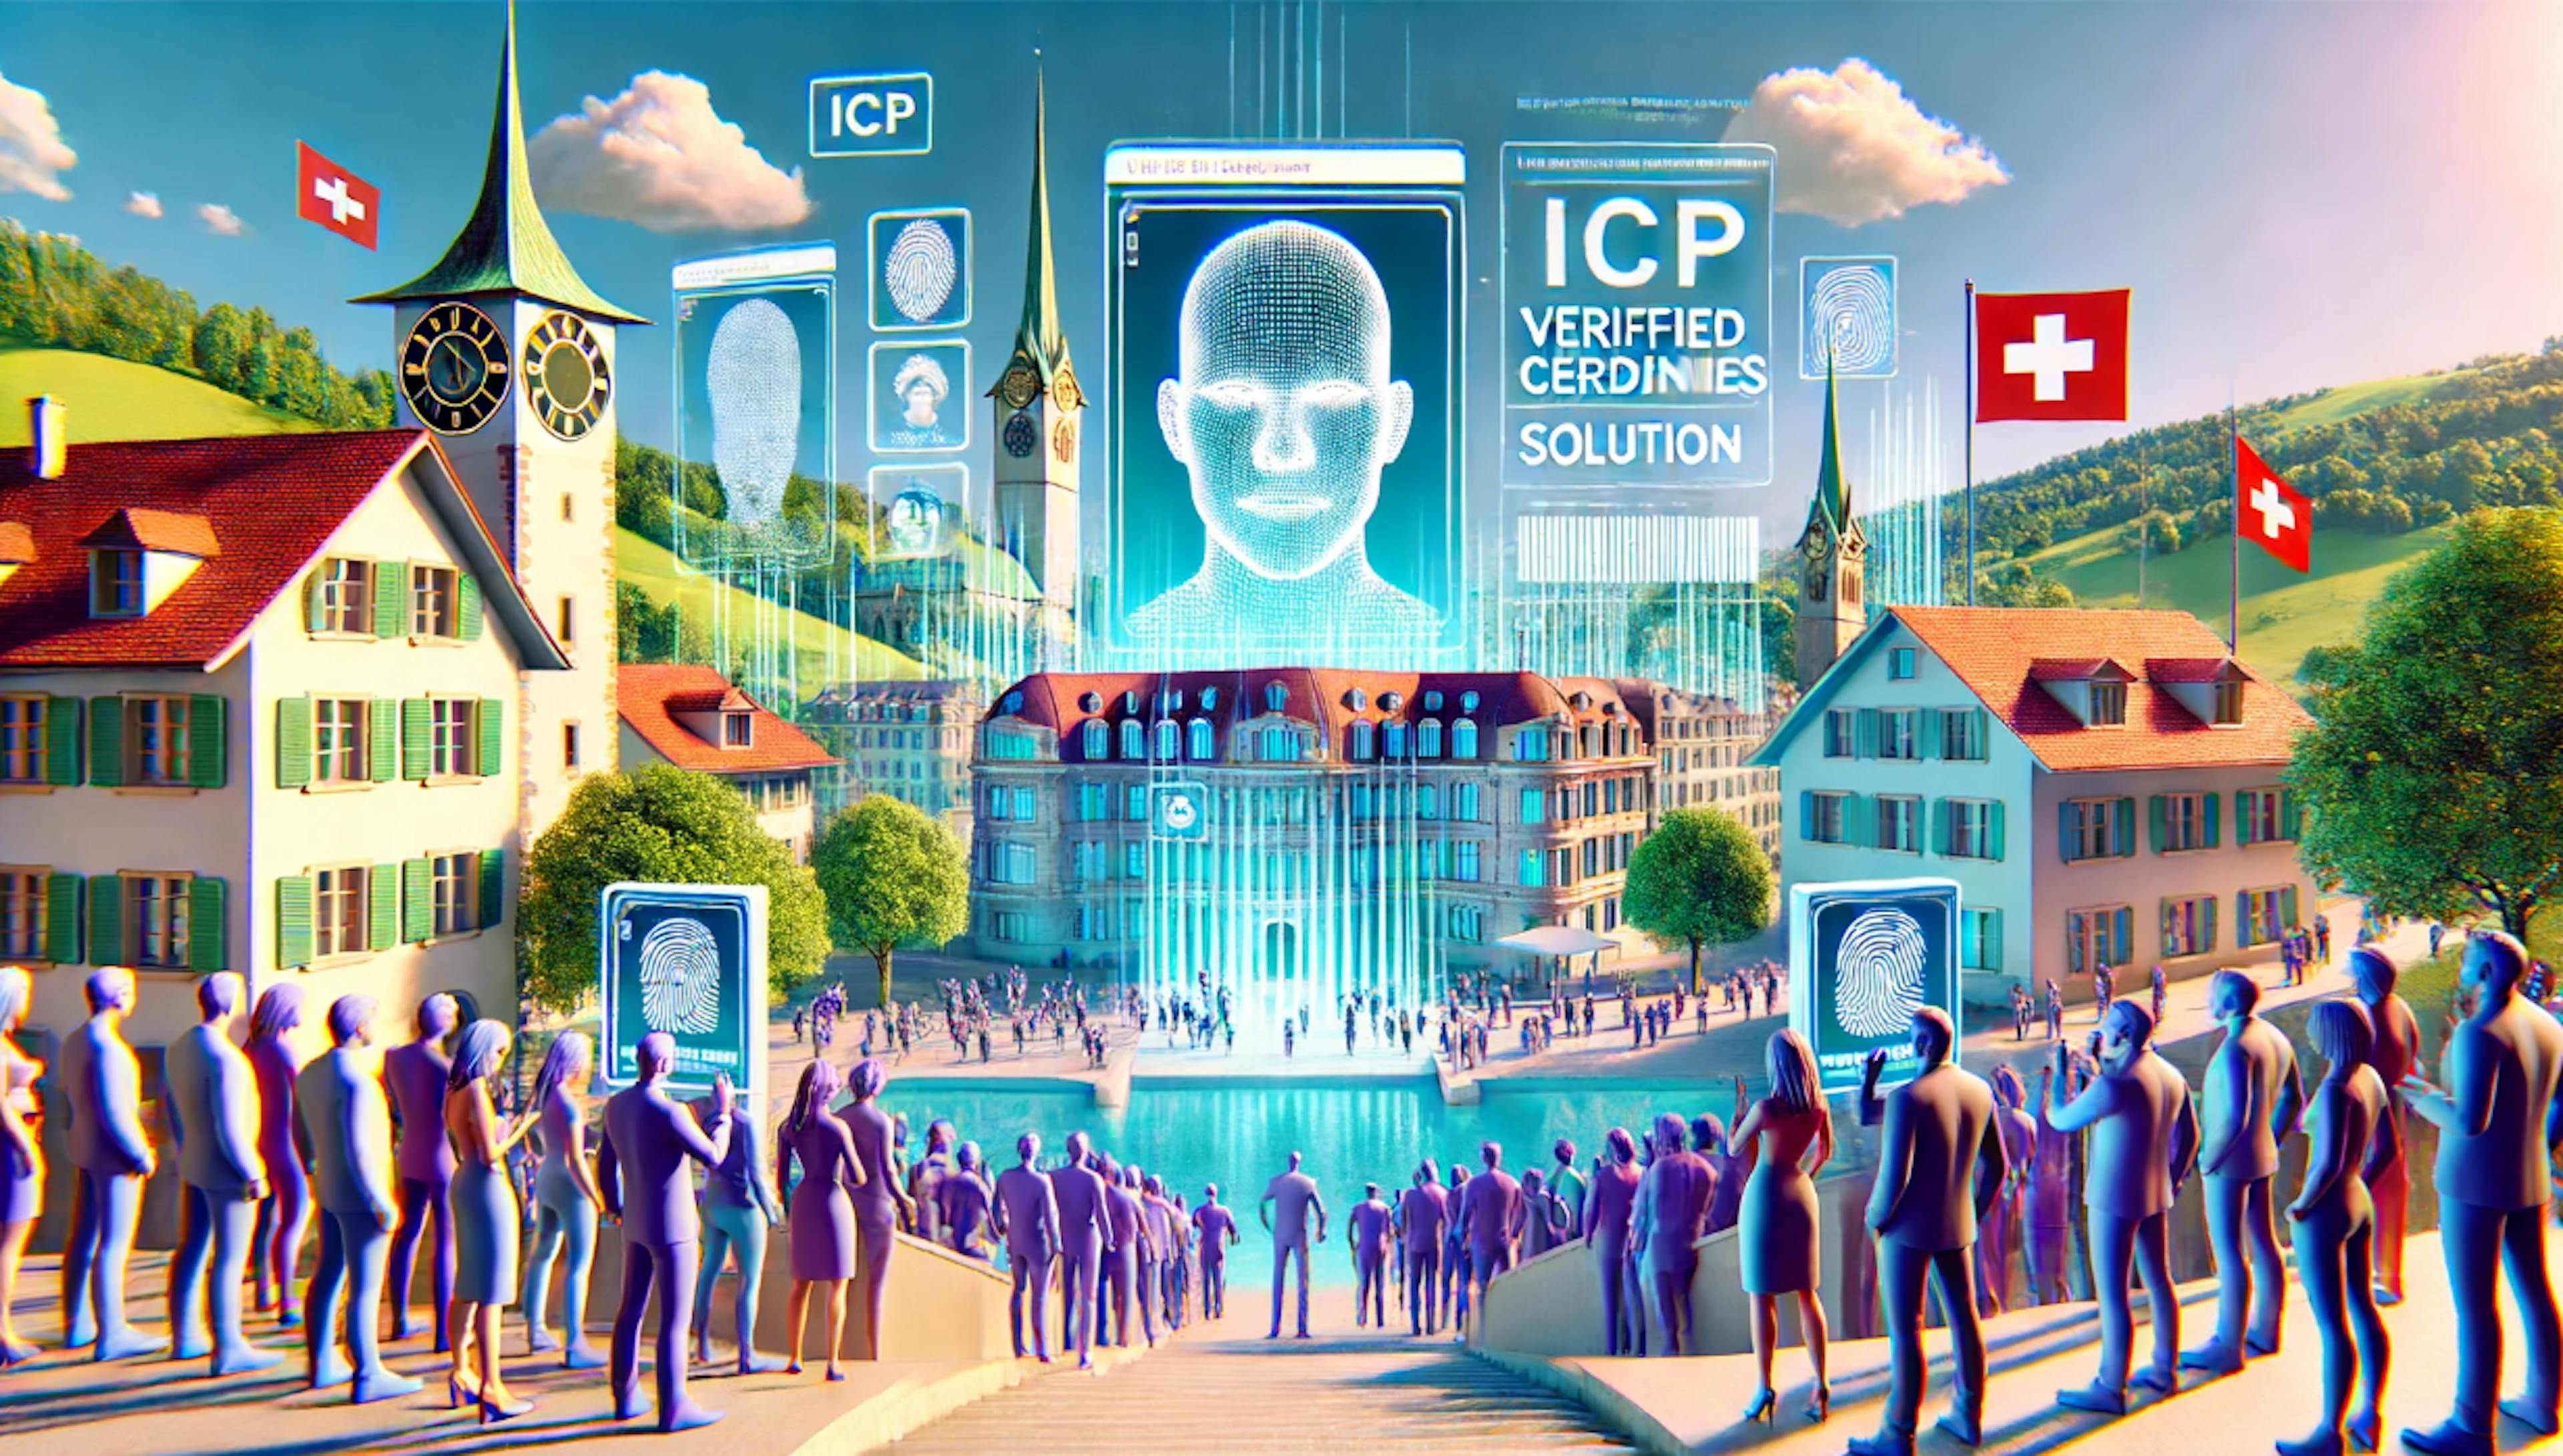 featured image - Giải pháp không cần ví của ICP nâng cao sự tin cậy và quyền riêng tư trực tuyến như thế nào